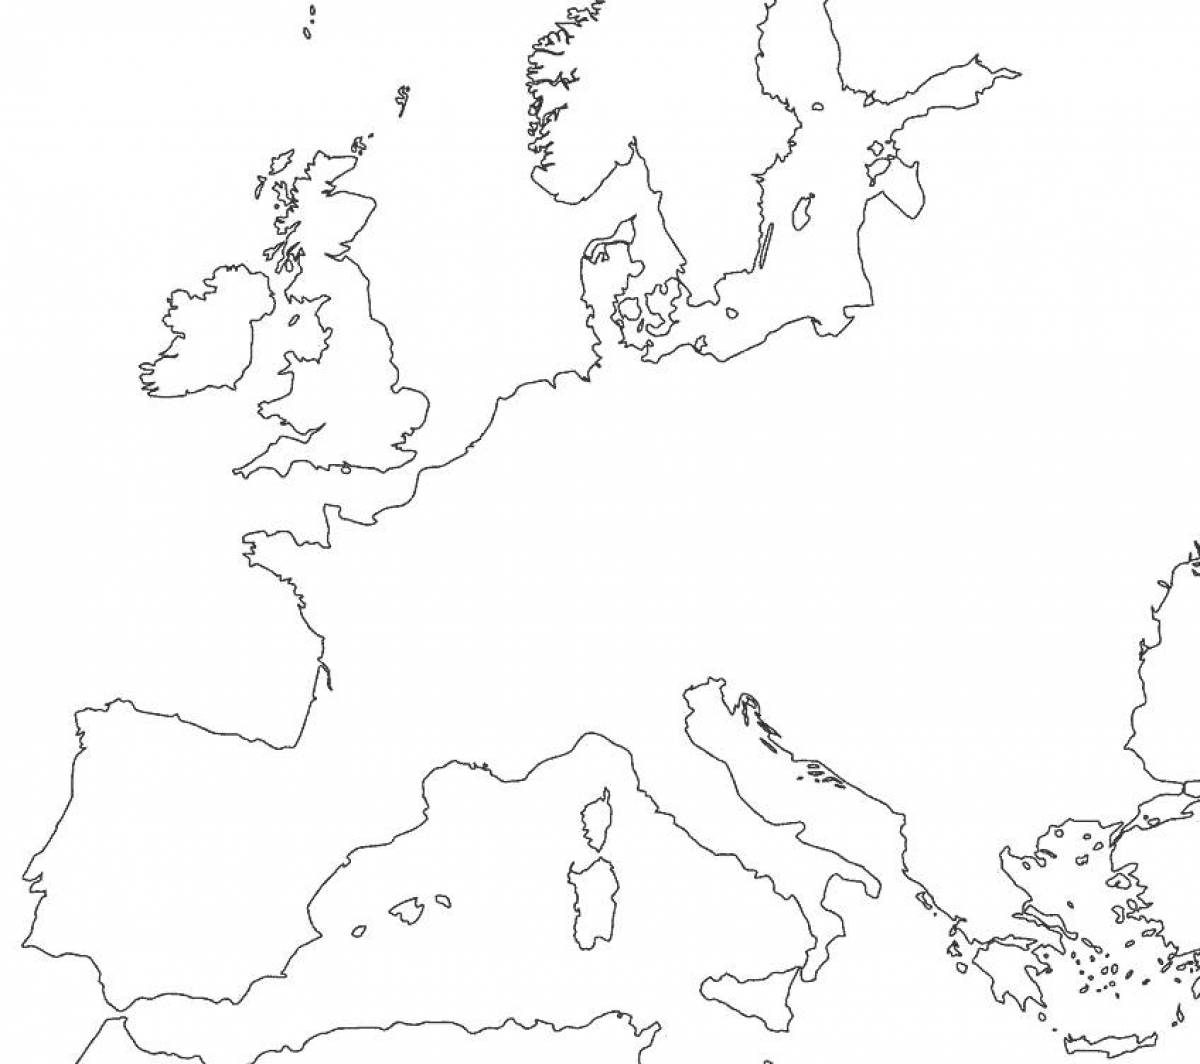 Привлекательная карта европы